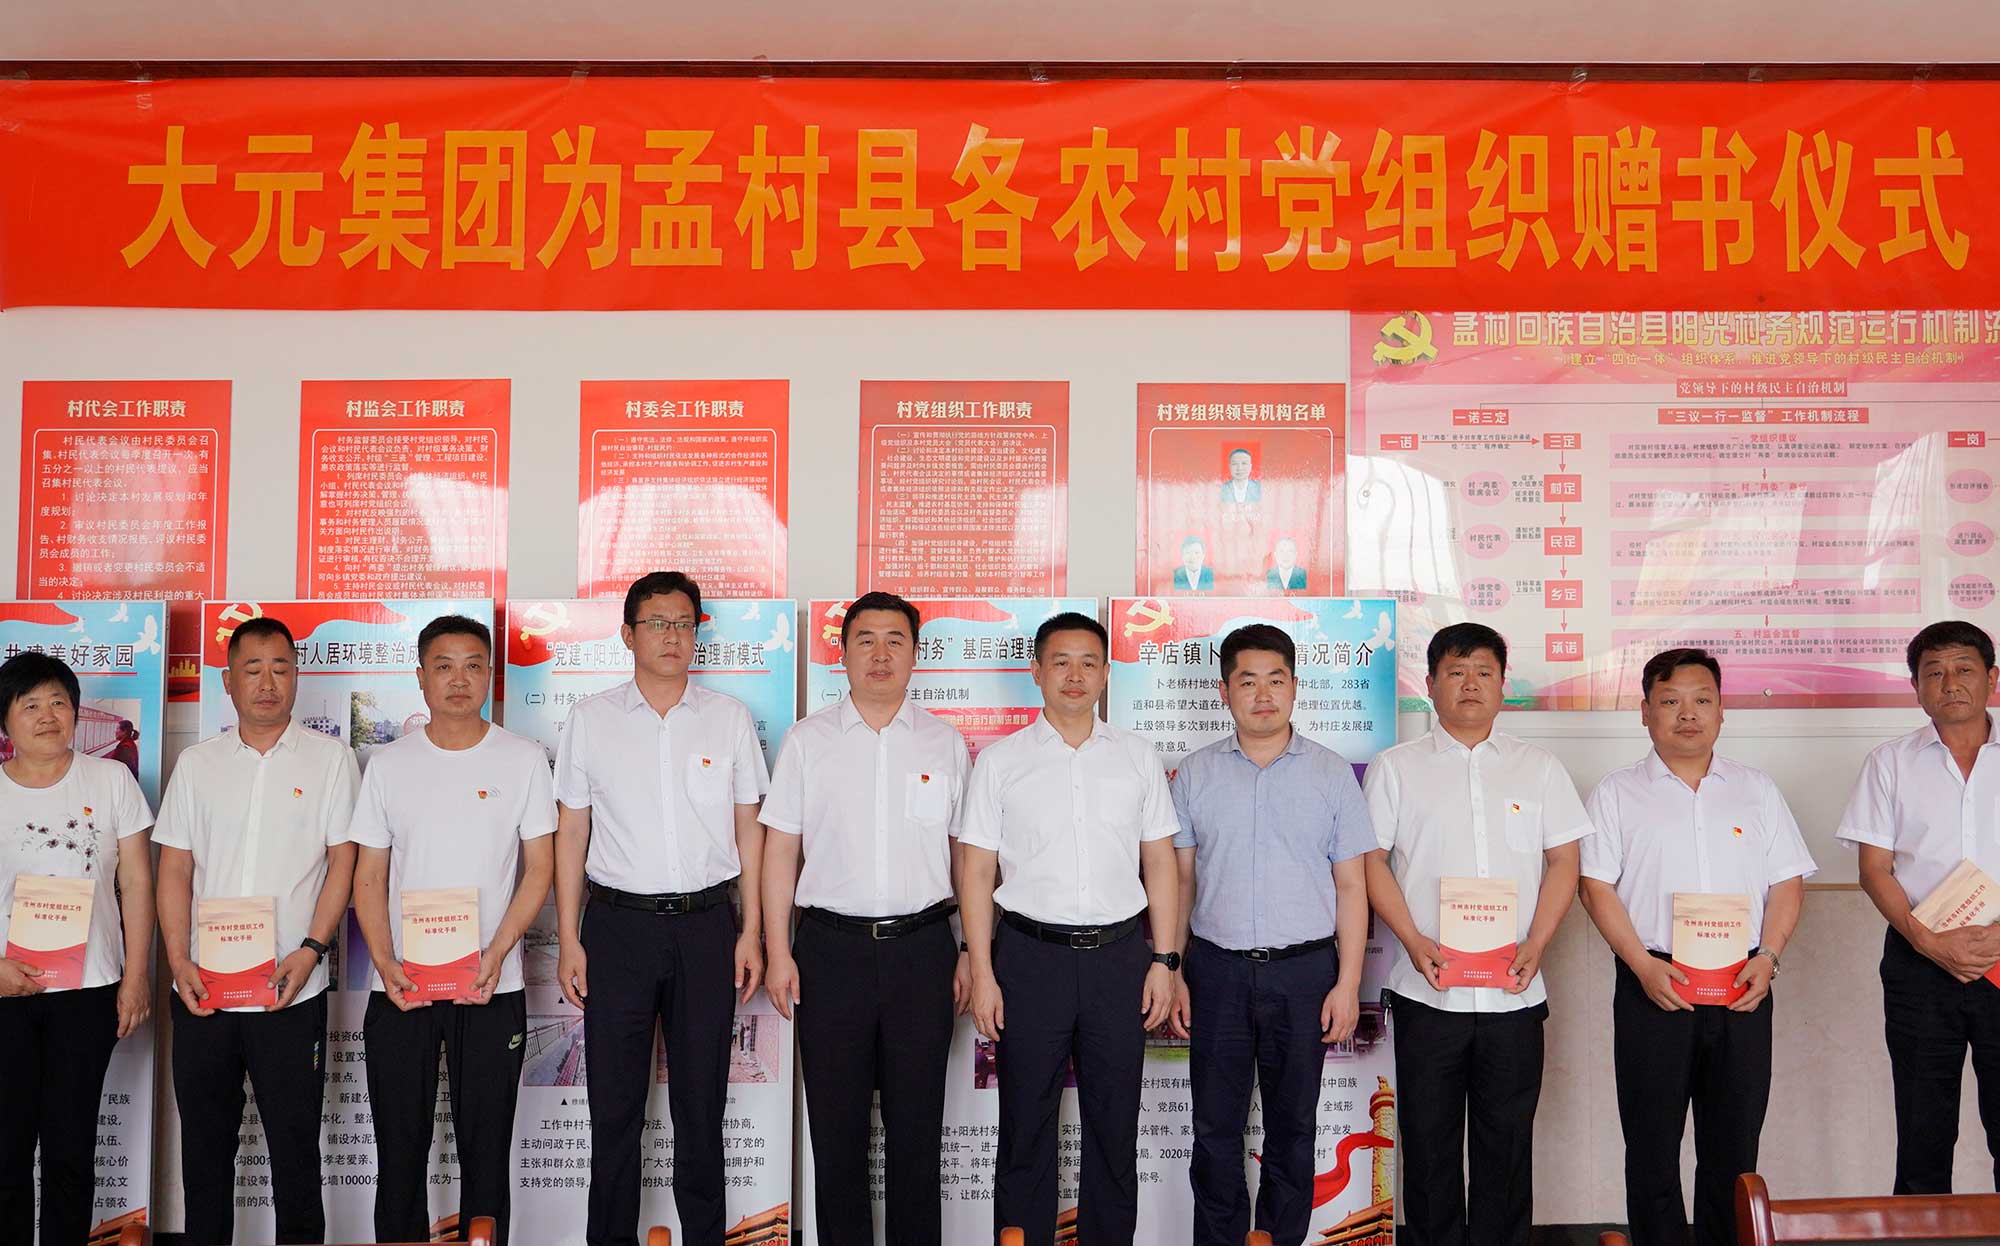 《沧州市村党组织工作标准化手册》首发捐赠仪式成功举办